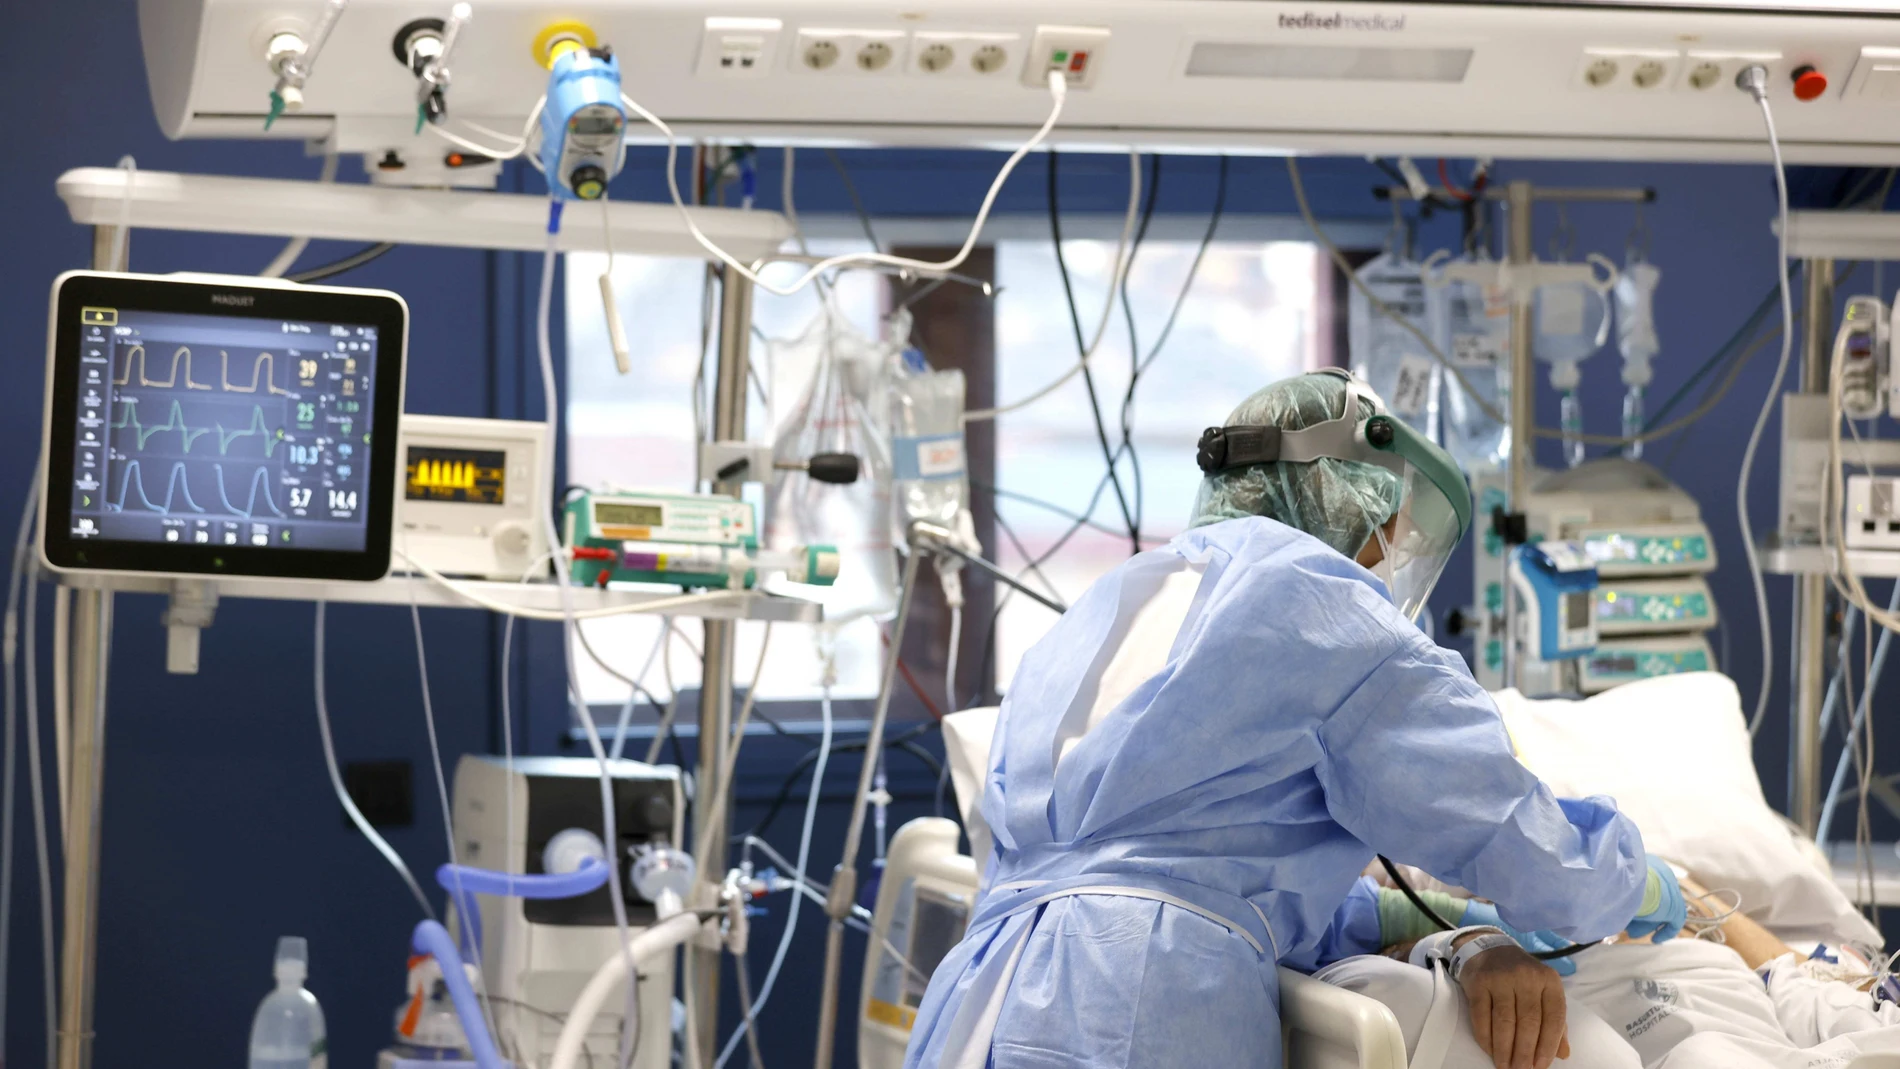 Una enfermera del hospital bilbaíno de Basurto trata a un paciente infectado por covid en la Unidad de Críticos del hospital vizcaíno